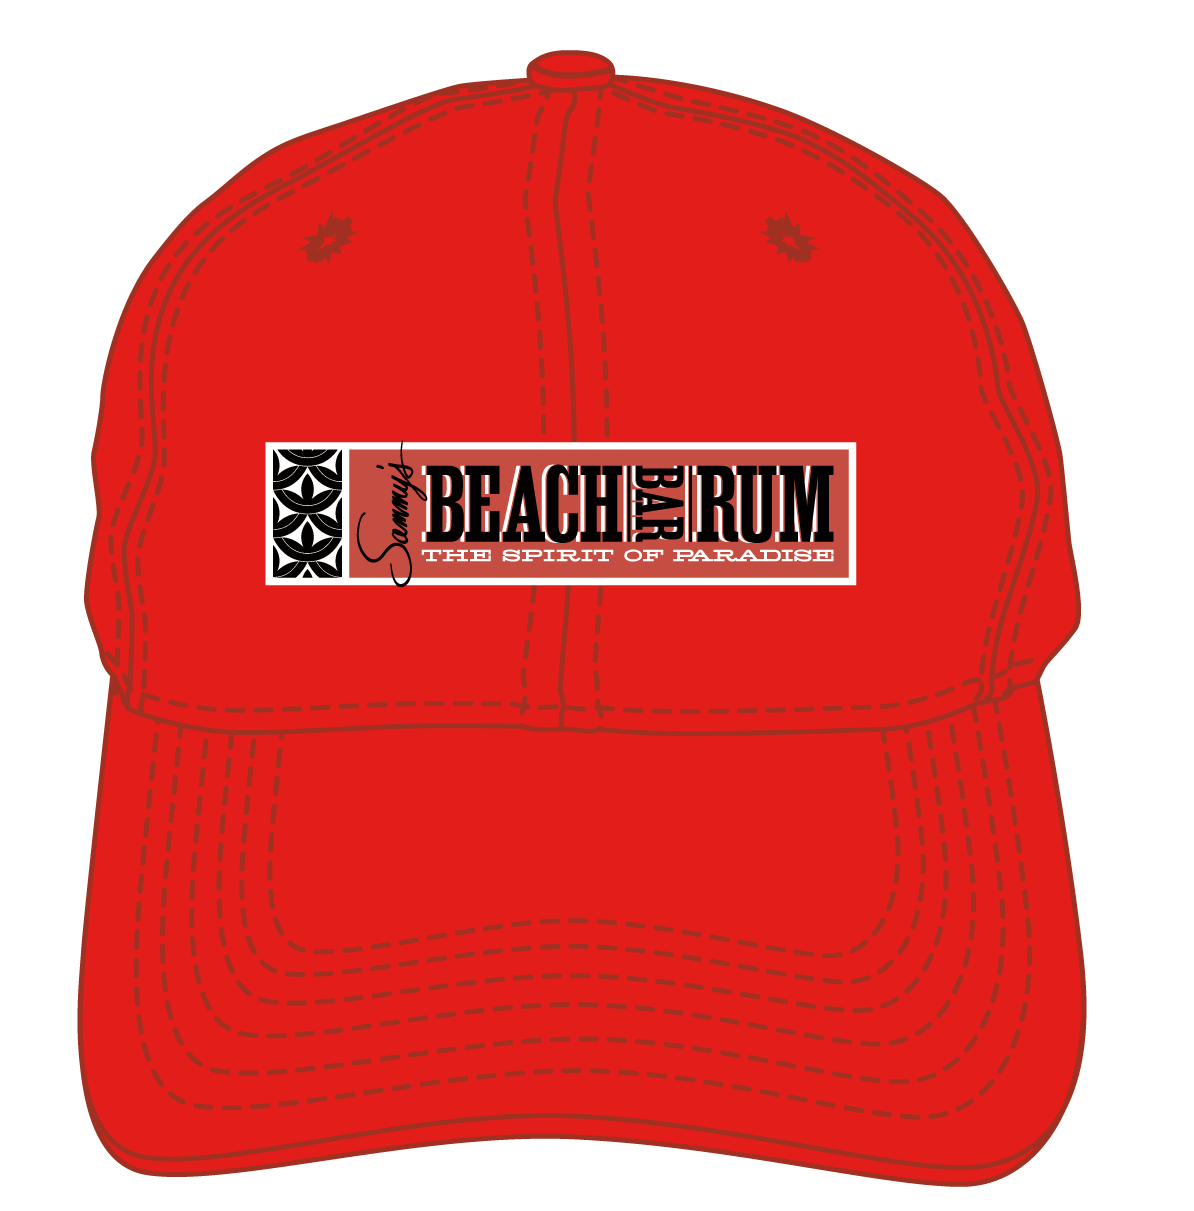 Beach Bar Rum